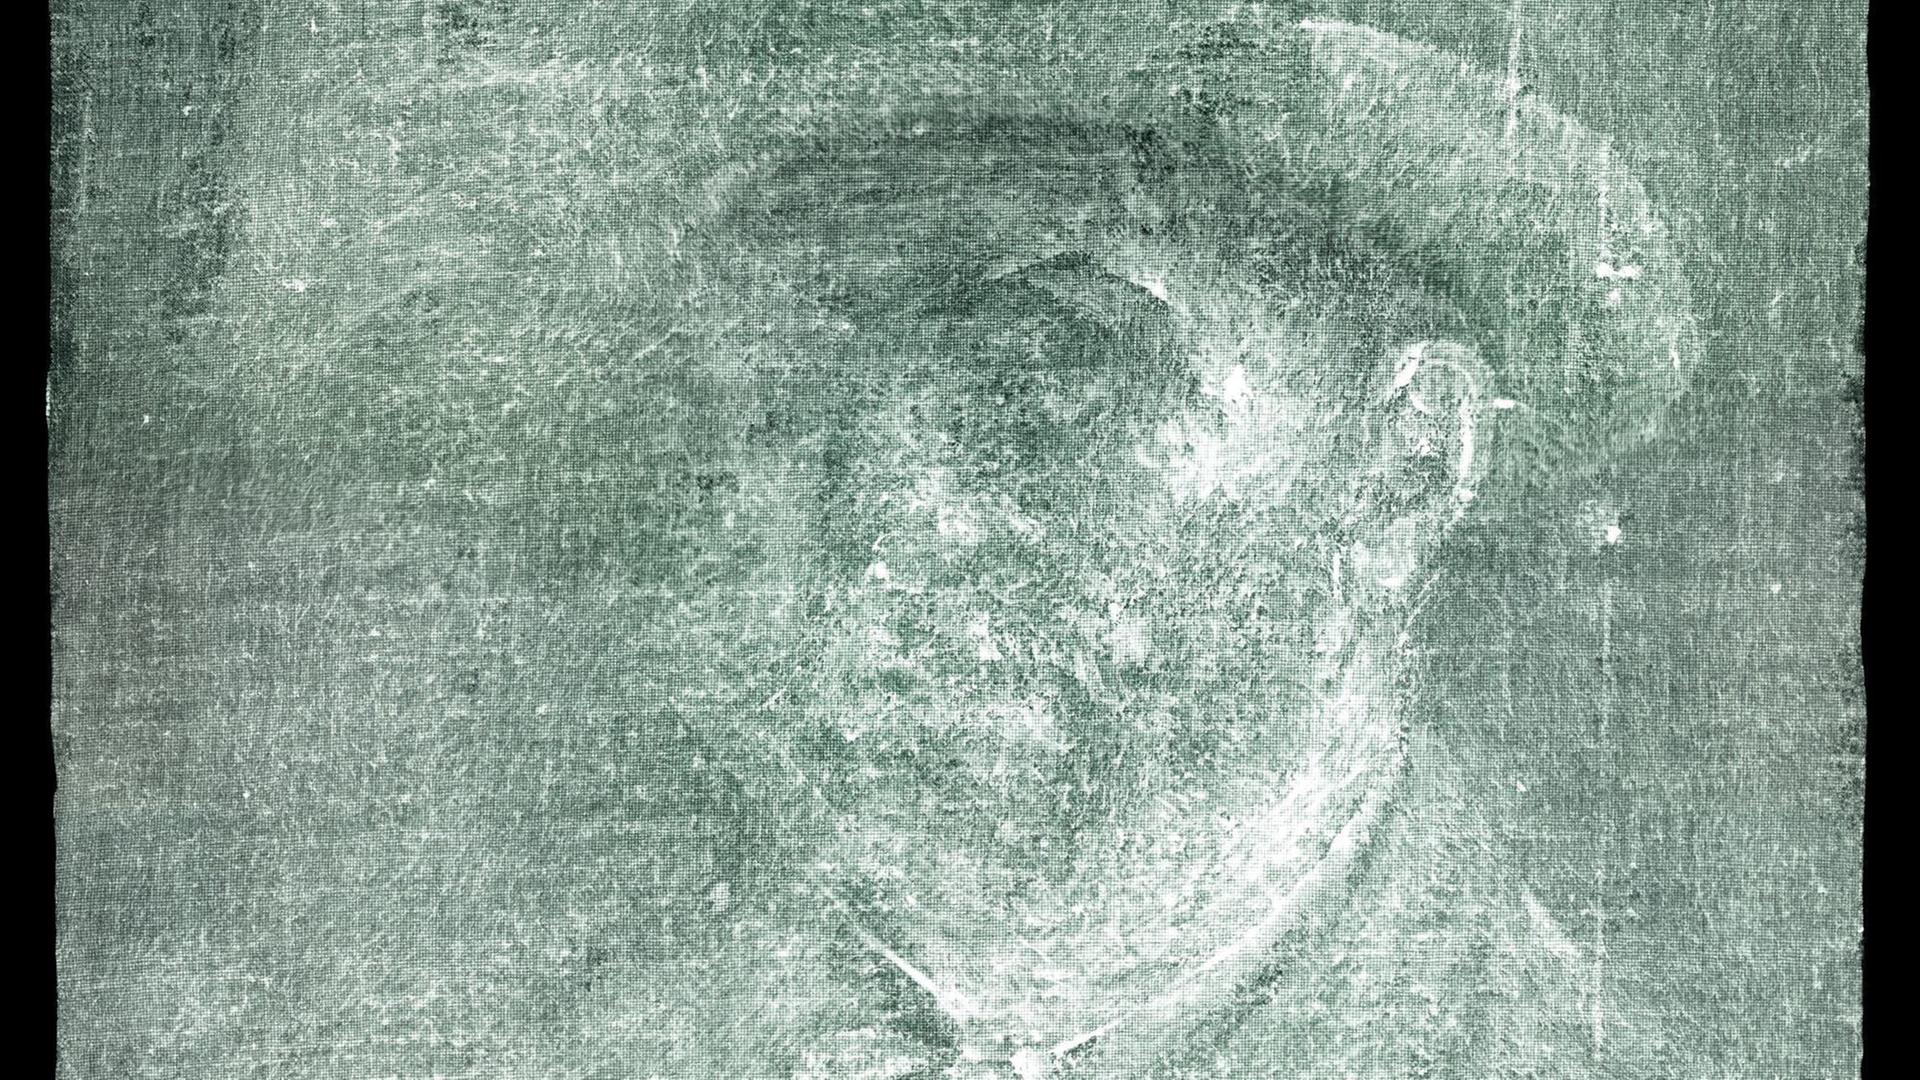 Das mutmaßliche Selbstporträt von Vincent van Gogh im Röntgenbild. Es zeigt verschwommen einen Mann mit Hut.